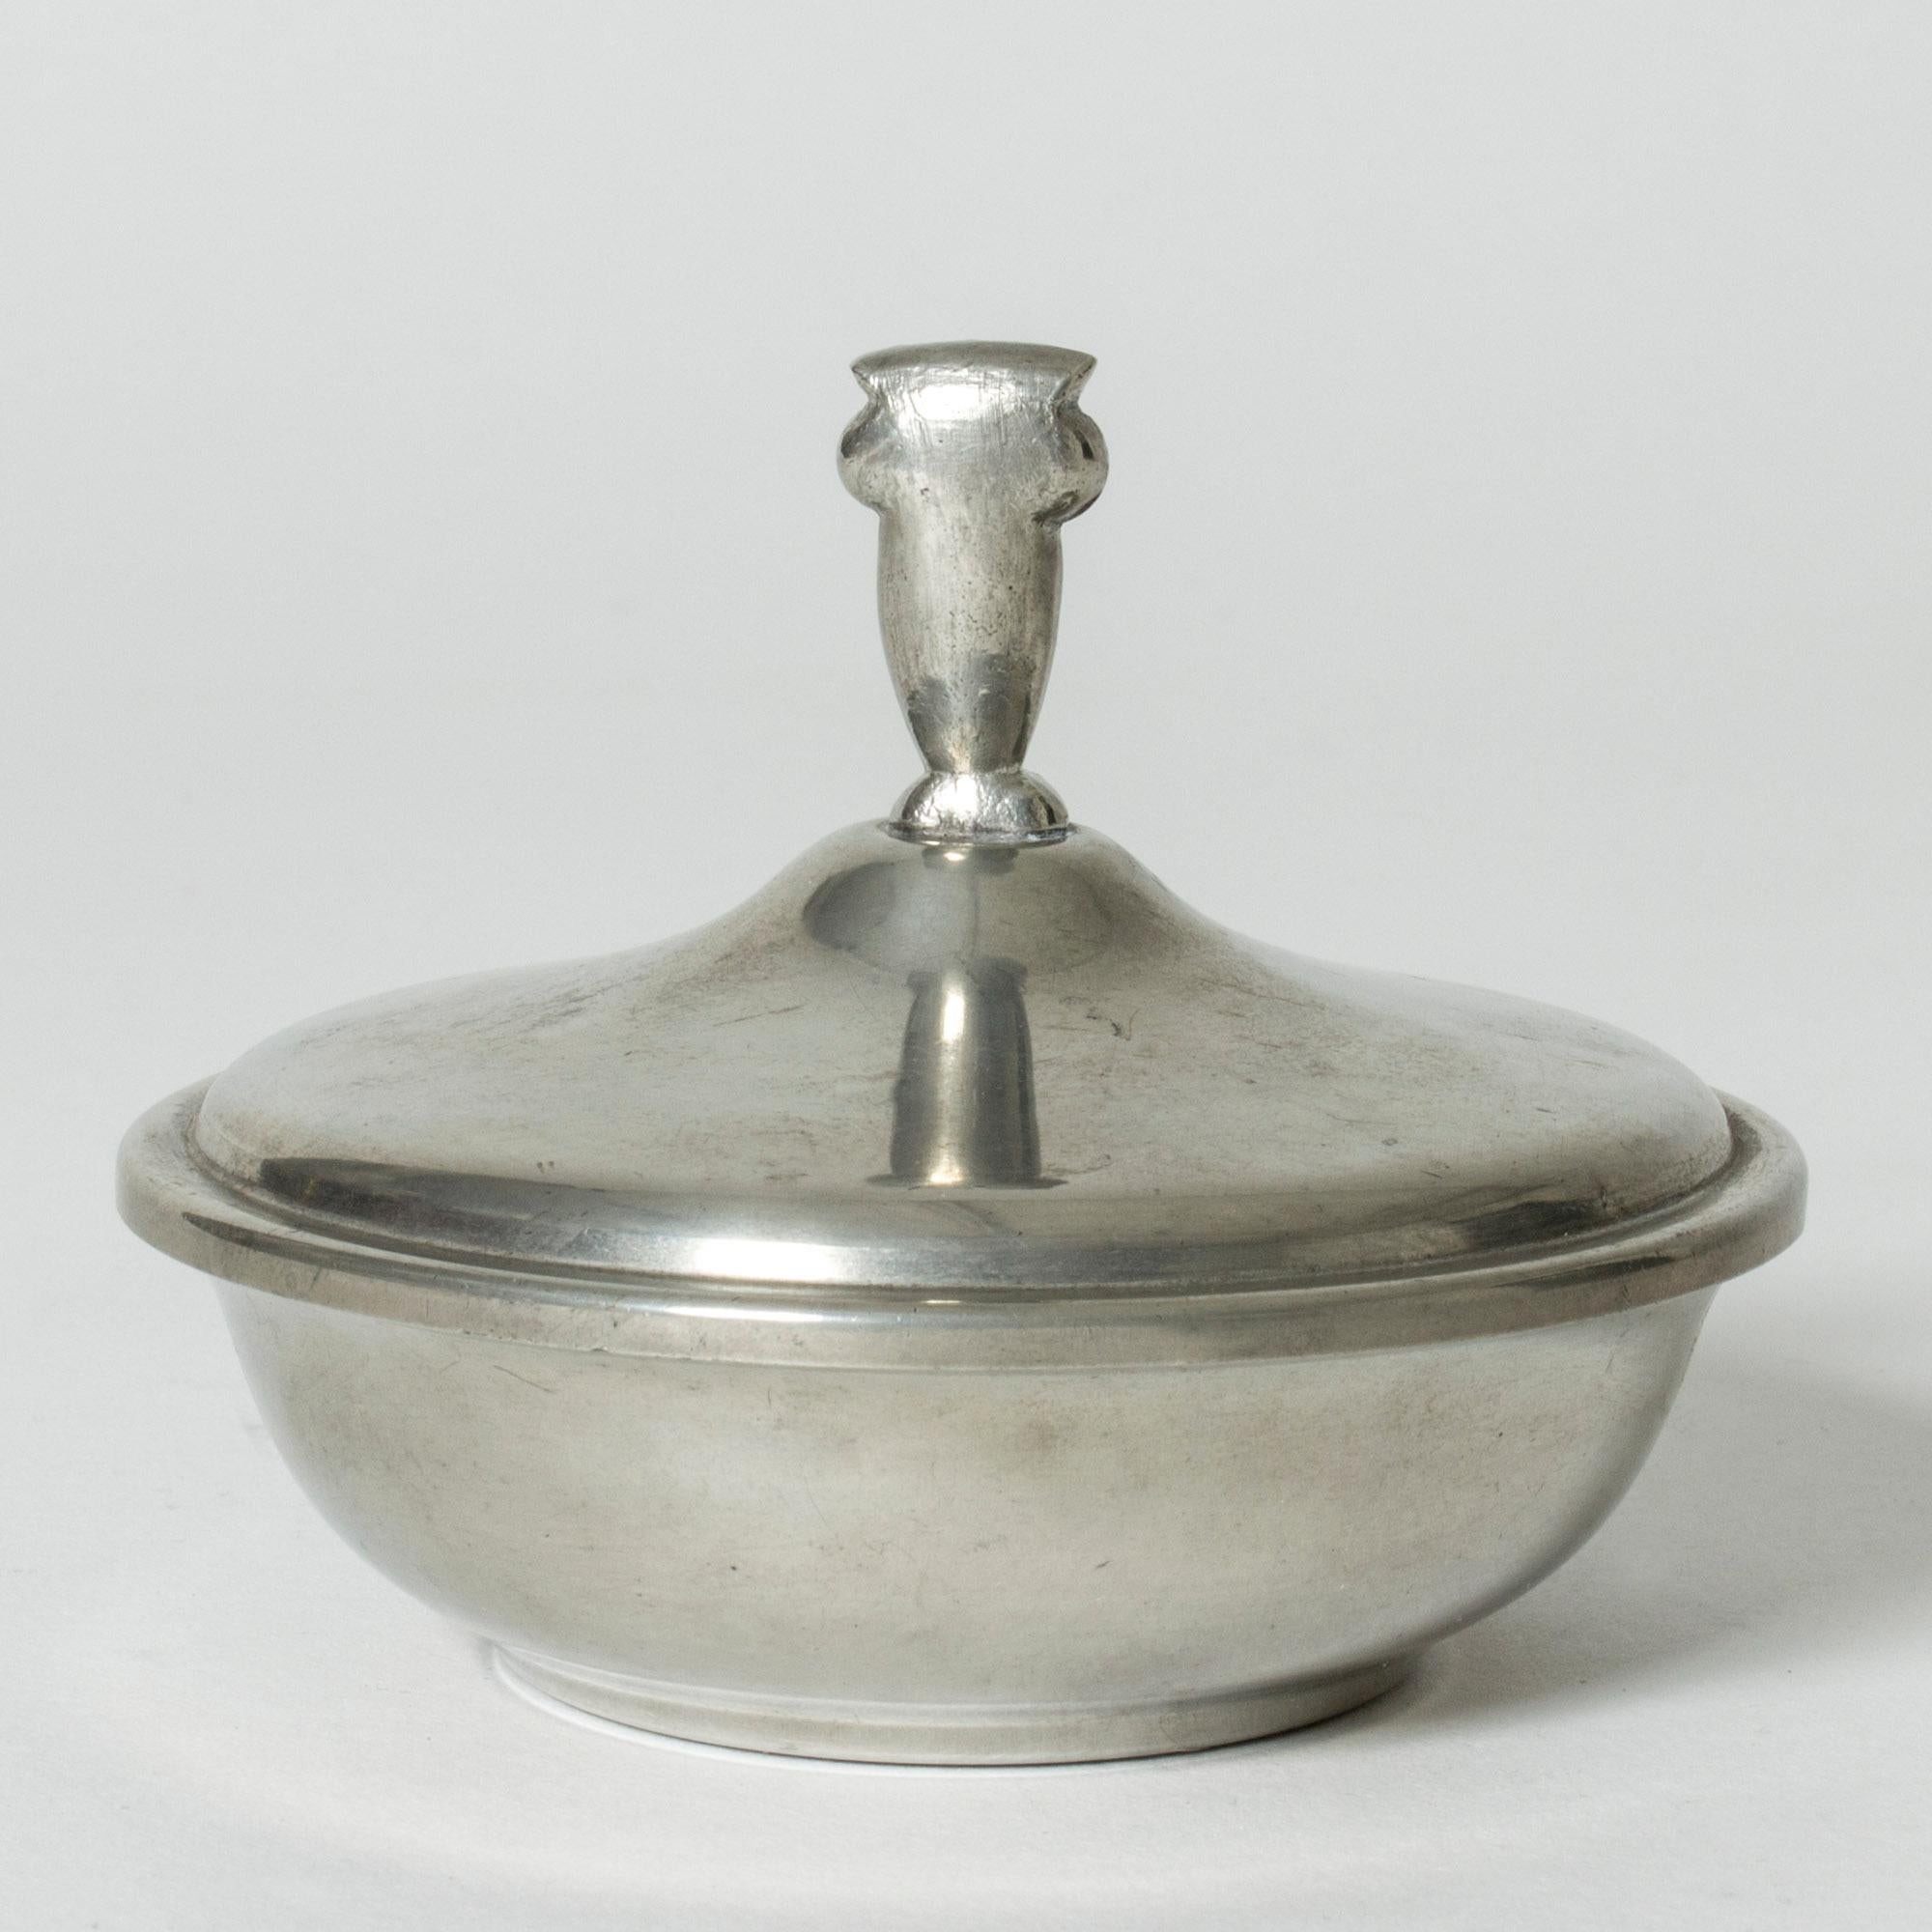 Scandinavian Modern Pewter Jar from GAB, Sweden, 1933